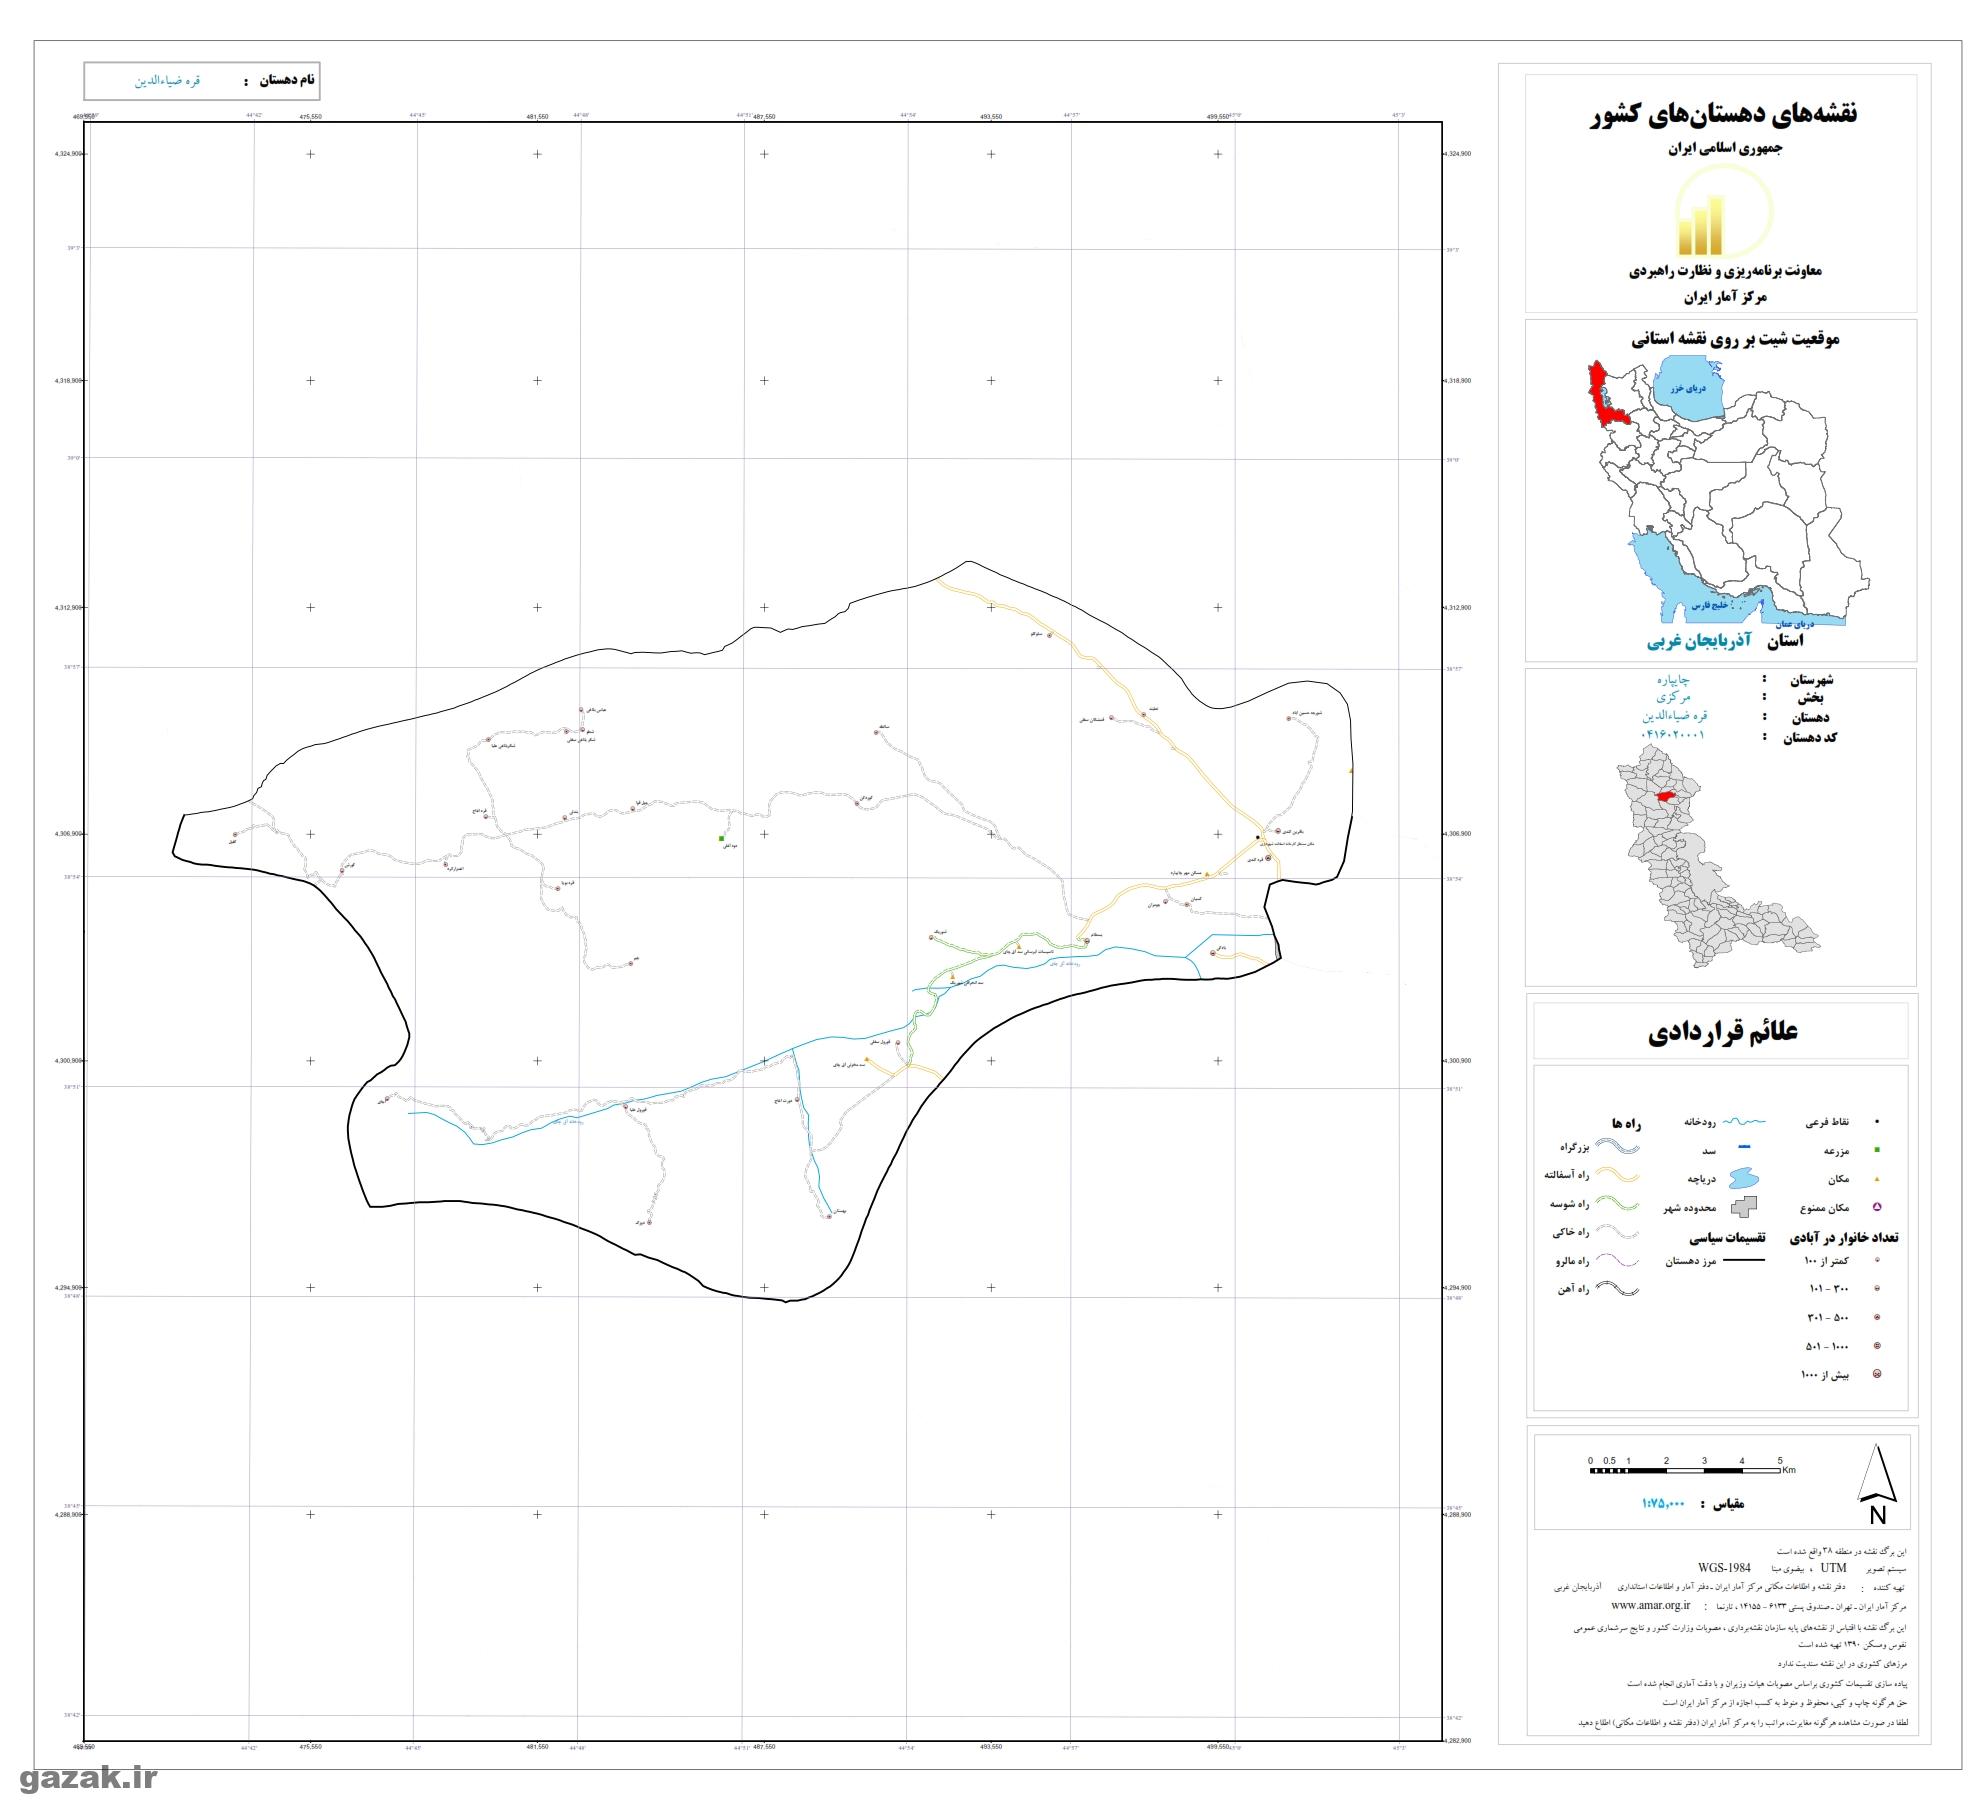 نقشه روستاهای شهرستان چایپاره